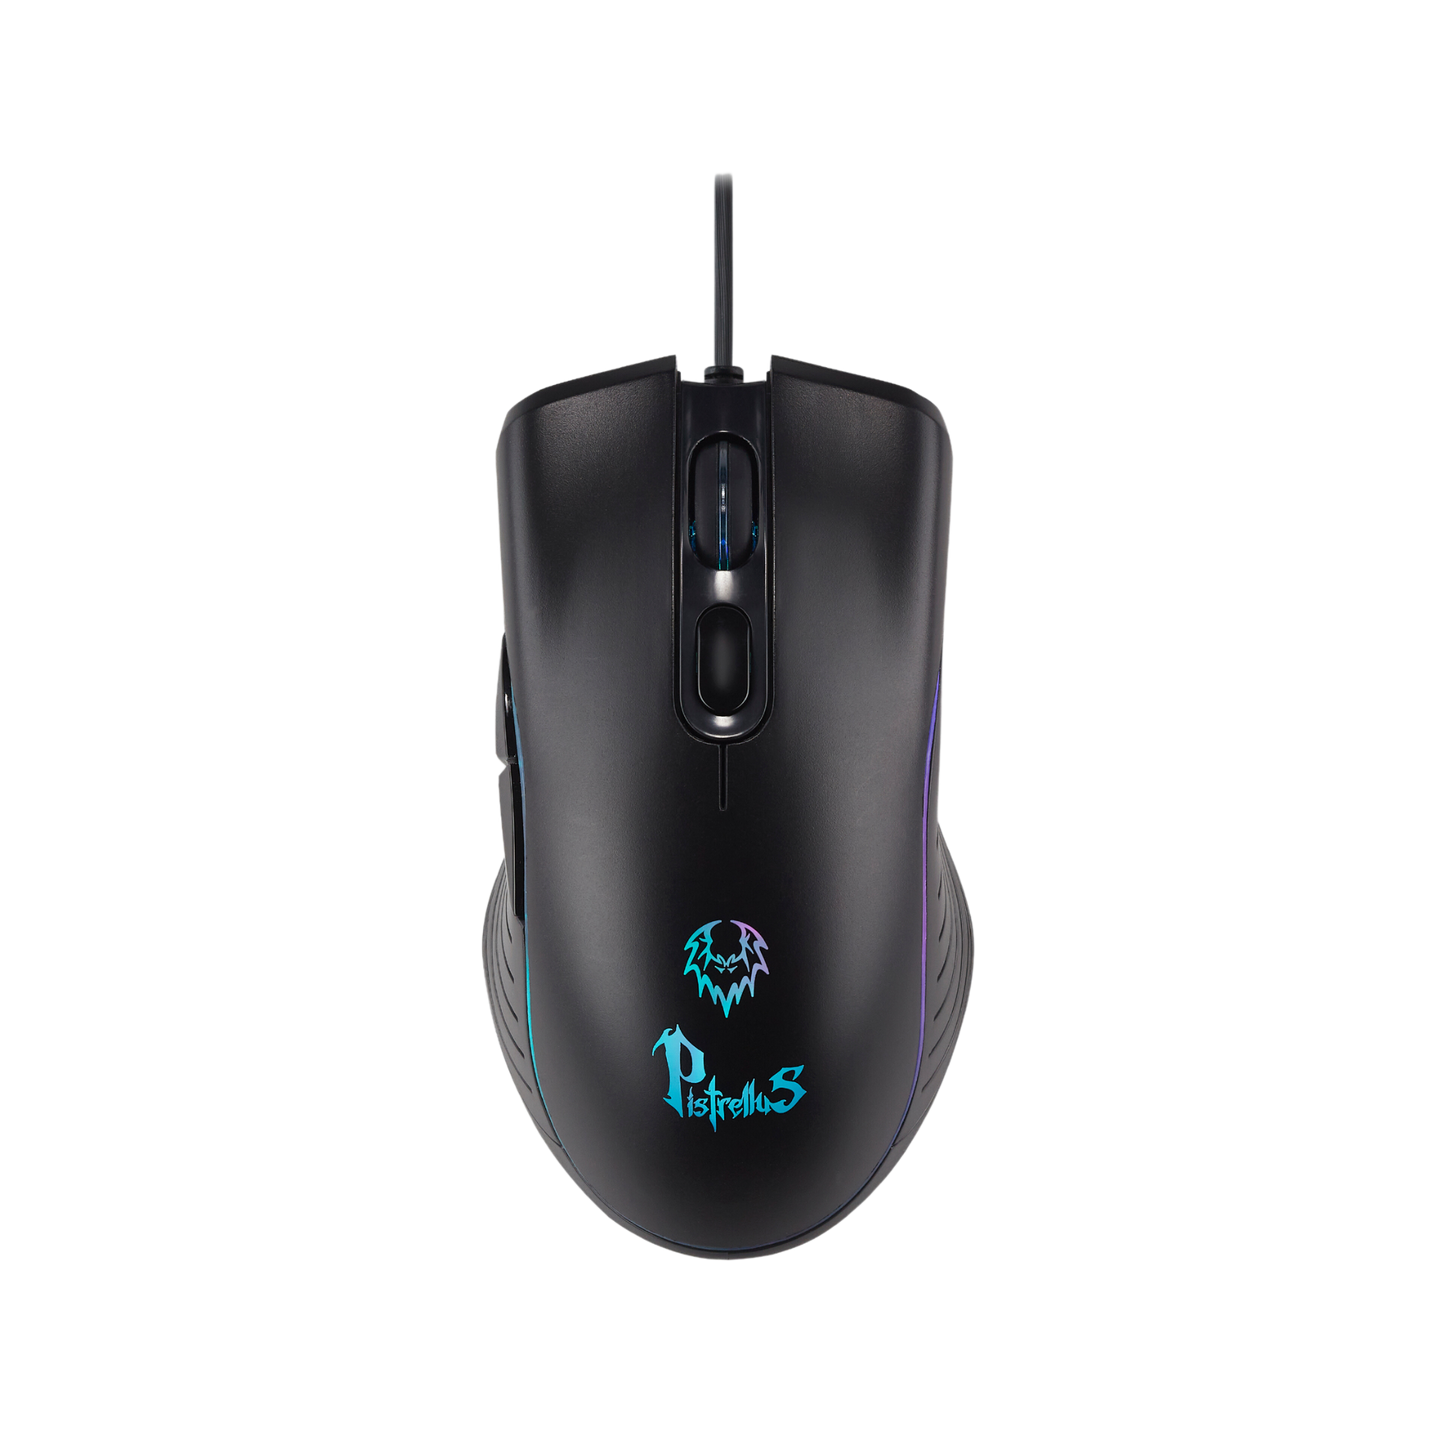 PISTRELLUS Illuminated Gaming Mouse